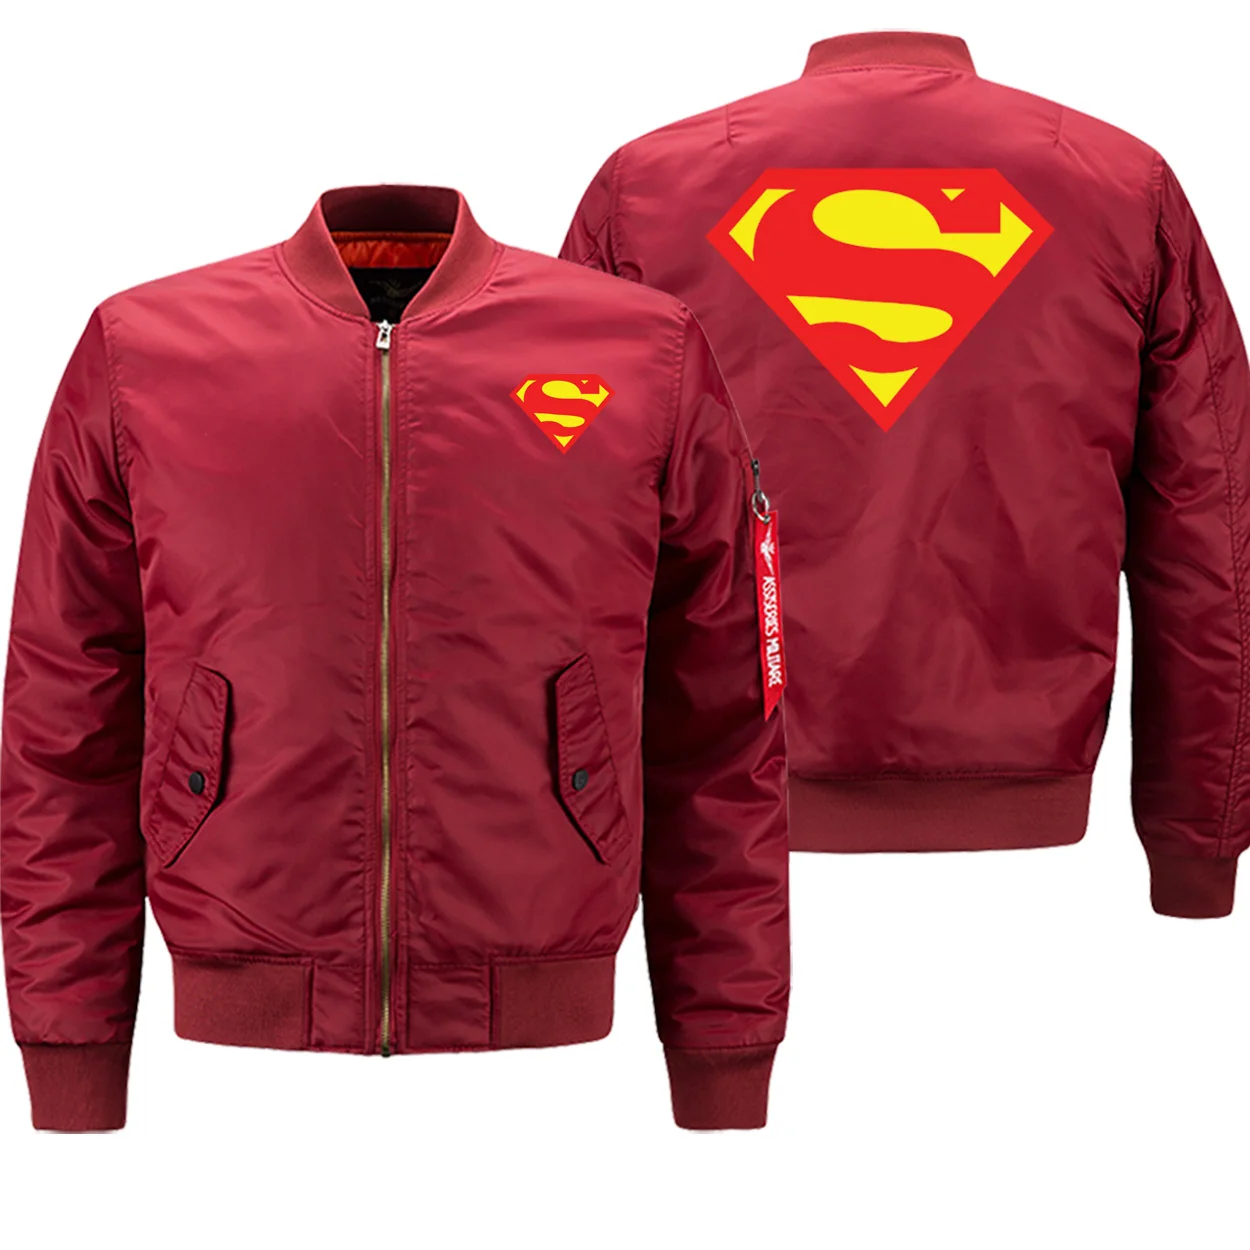 Новое поступление, зимние пальто для мужчин, бейсбольная форма Супермена, качественная повседневная мужская куртка-бомбер, горячая Распродажа, пальто-пилот, брендовая одежда